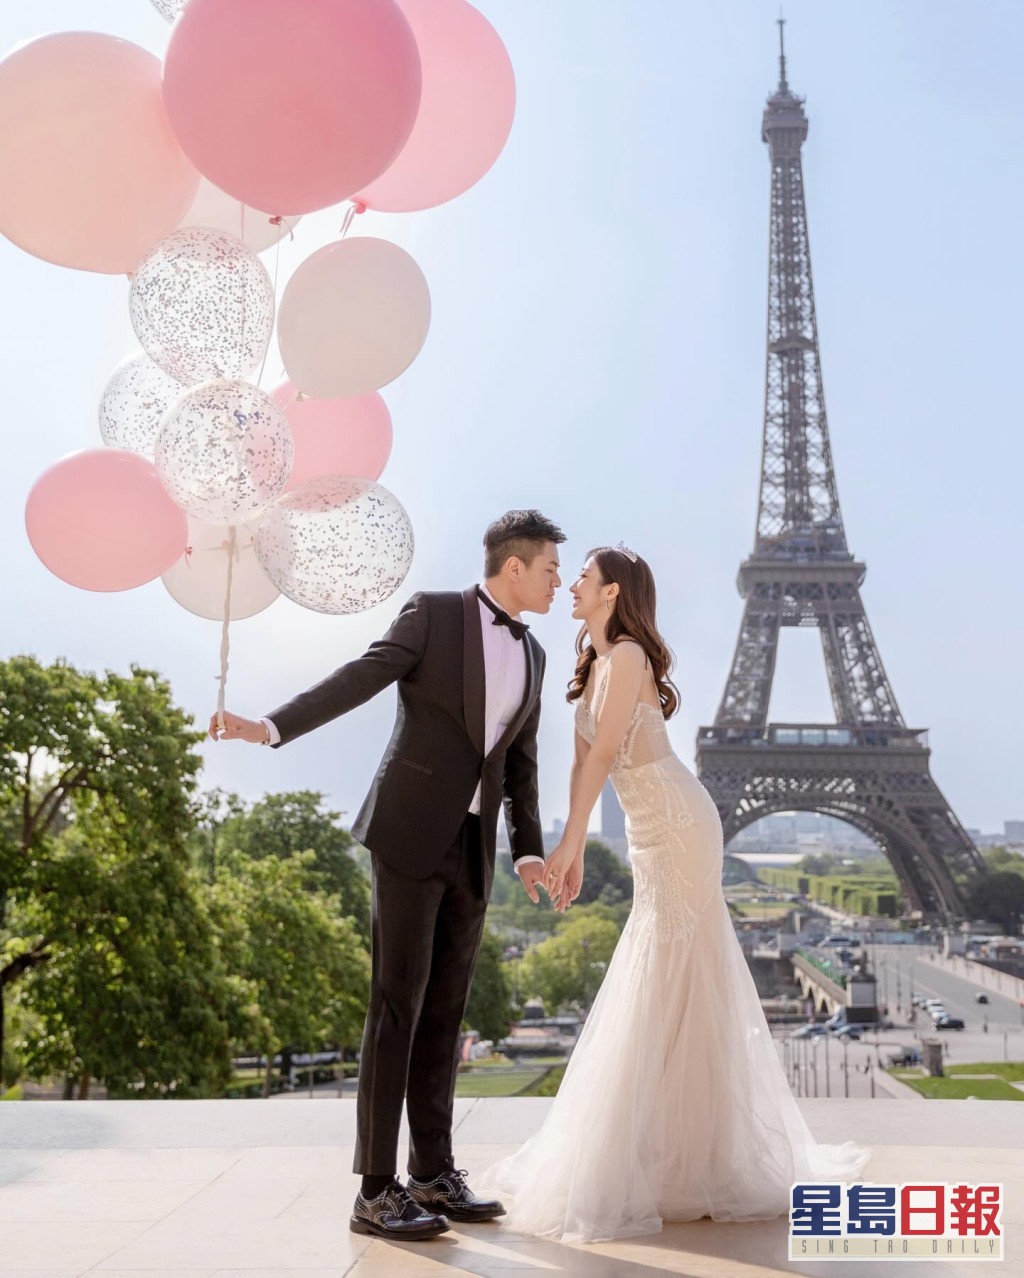 何依婷社交平台贴上在巴黎的婚照。